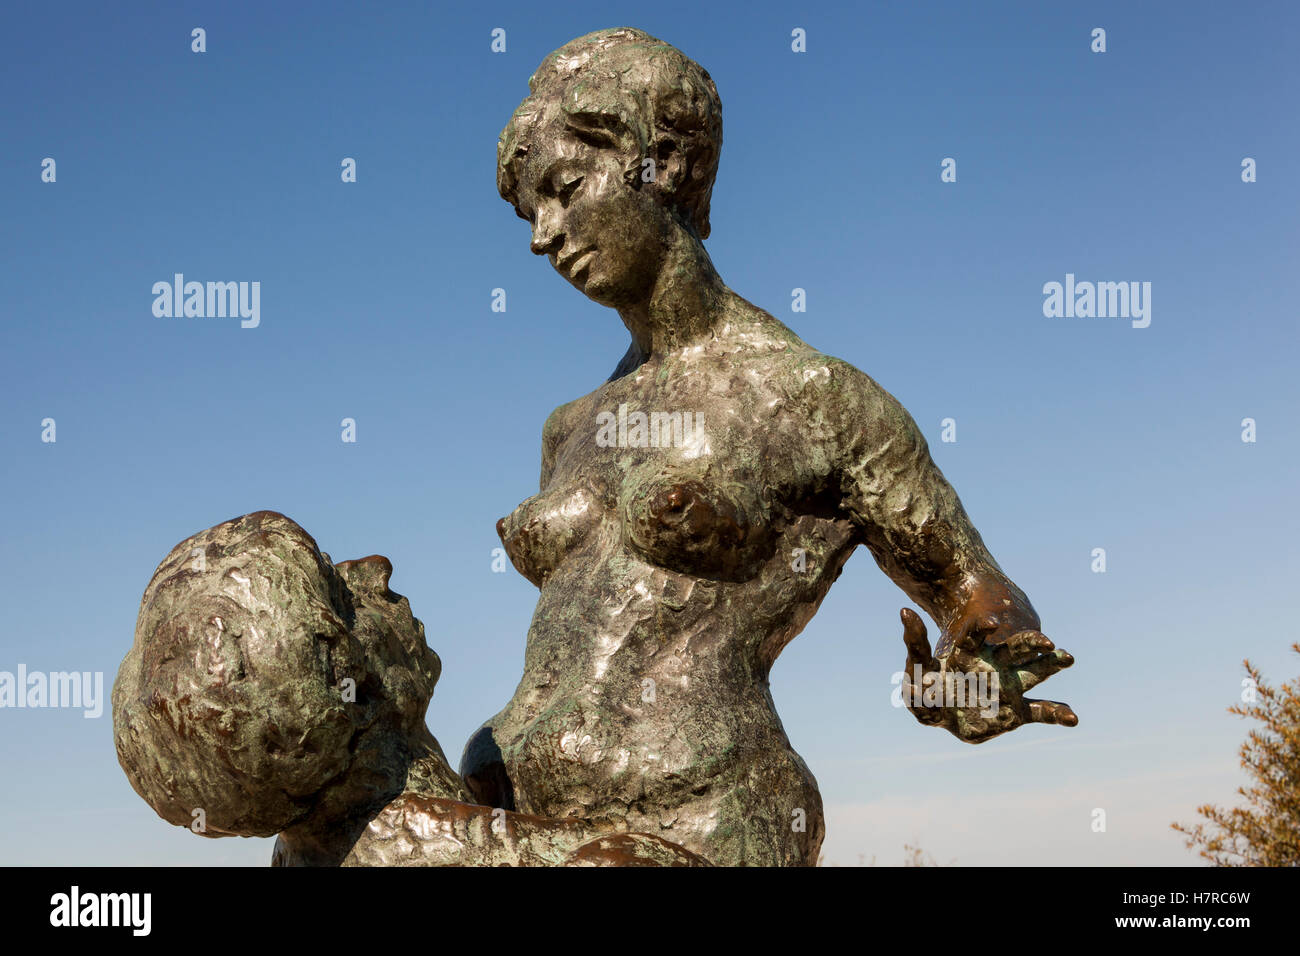 Liebespaar bronze sculpture by Wilfried Fitzenreiter, Warnemunde, Germany Stock Photo